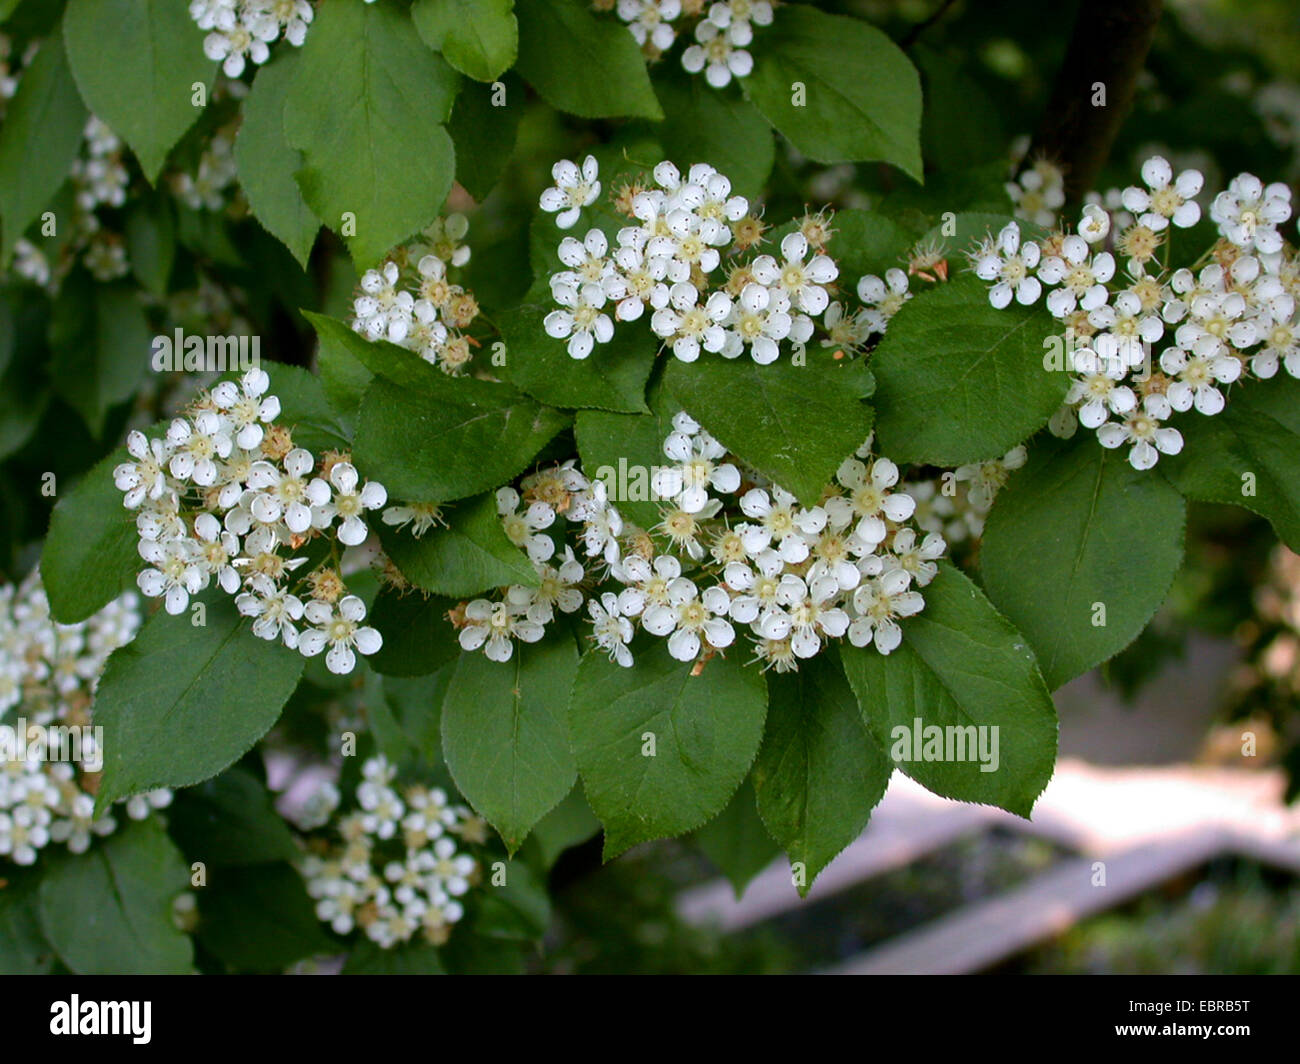 Photinia (Photinia villosa), blooming Stock Photo